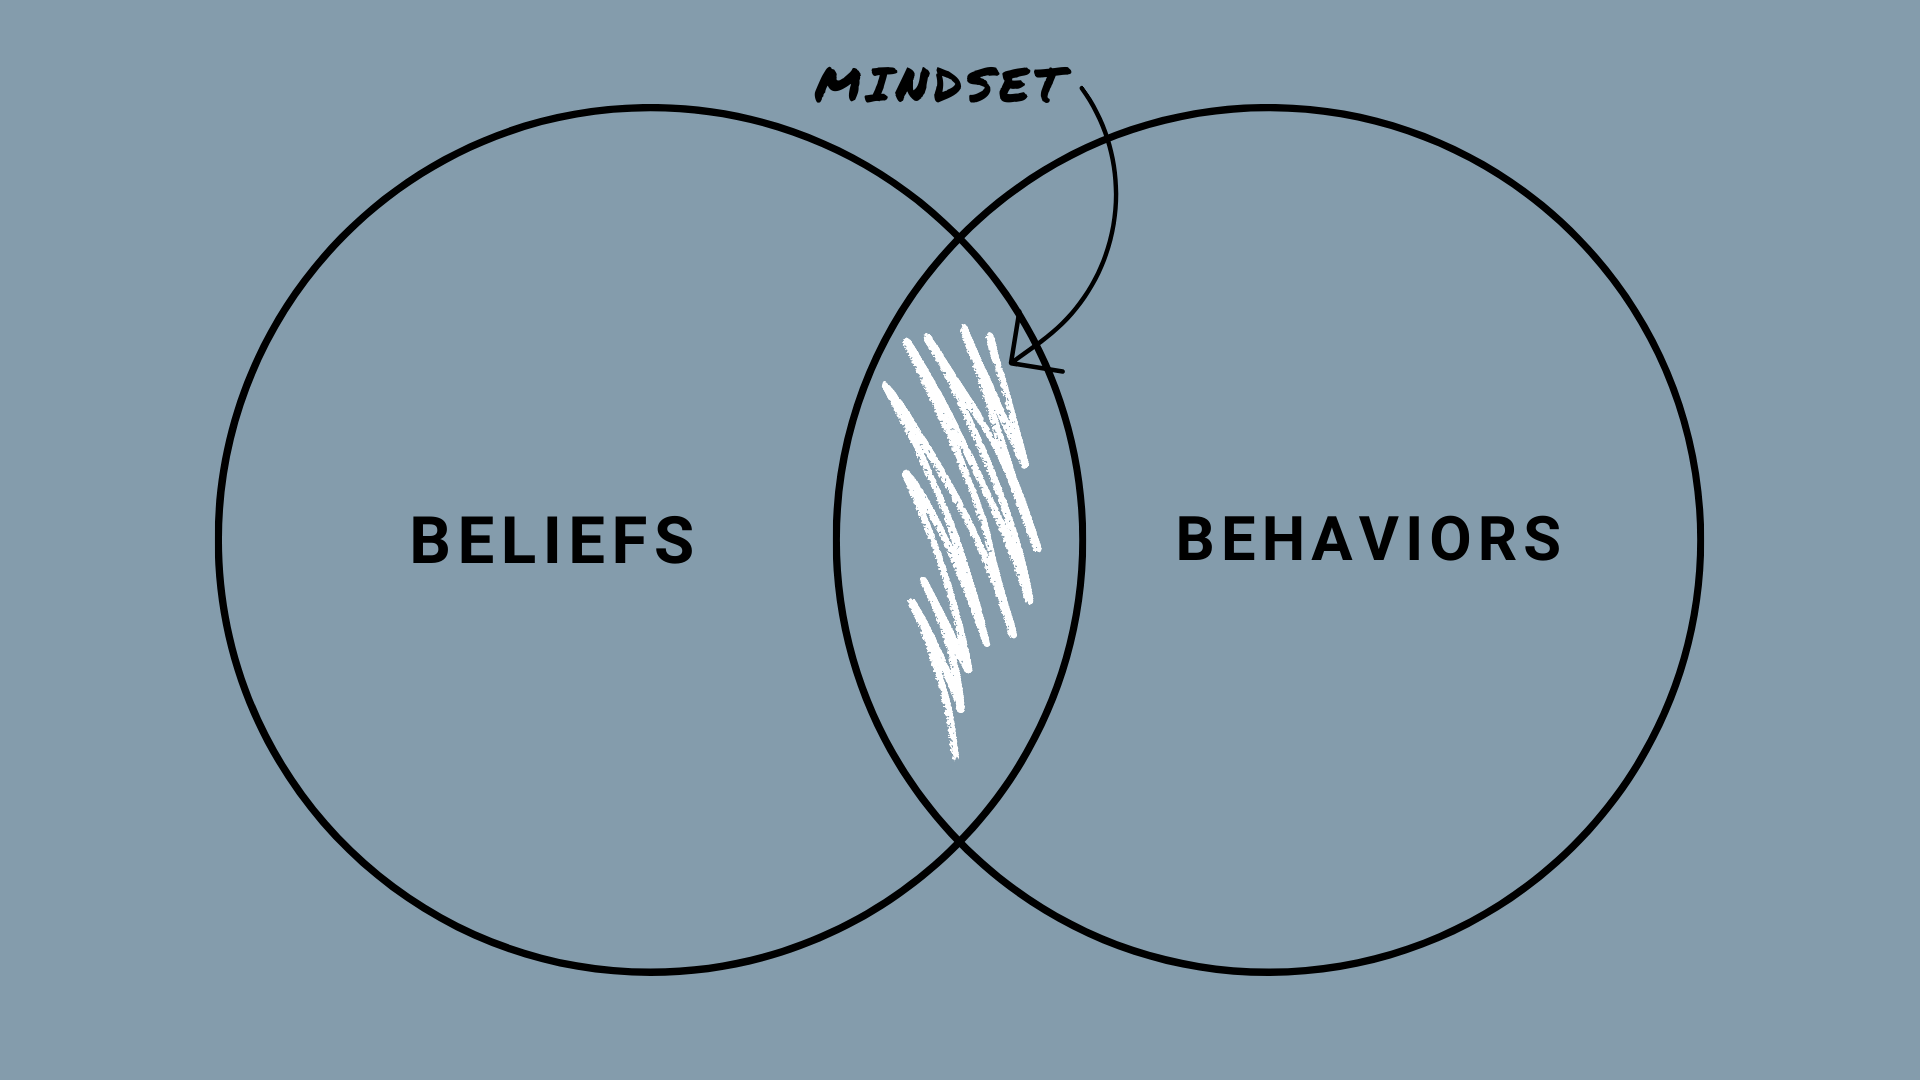 Mindset - Beliefs and Behaviors